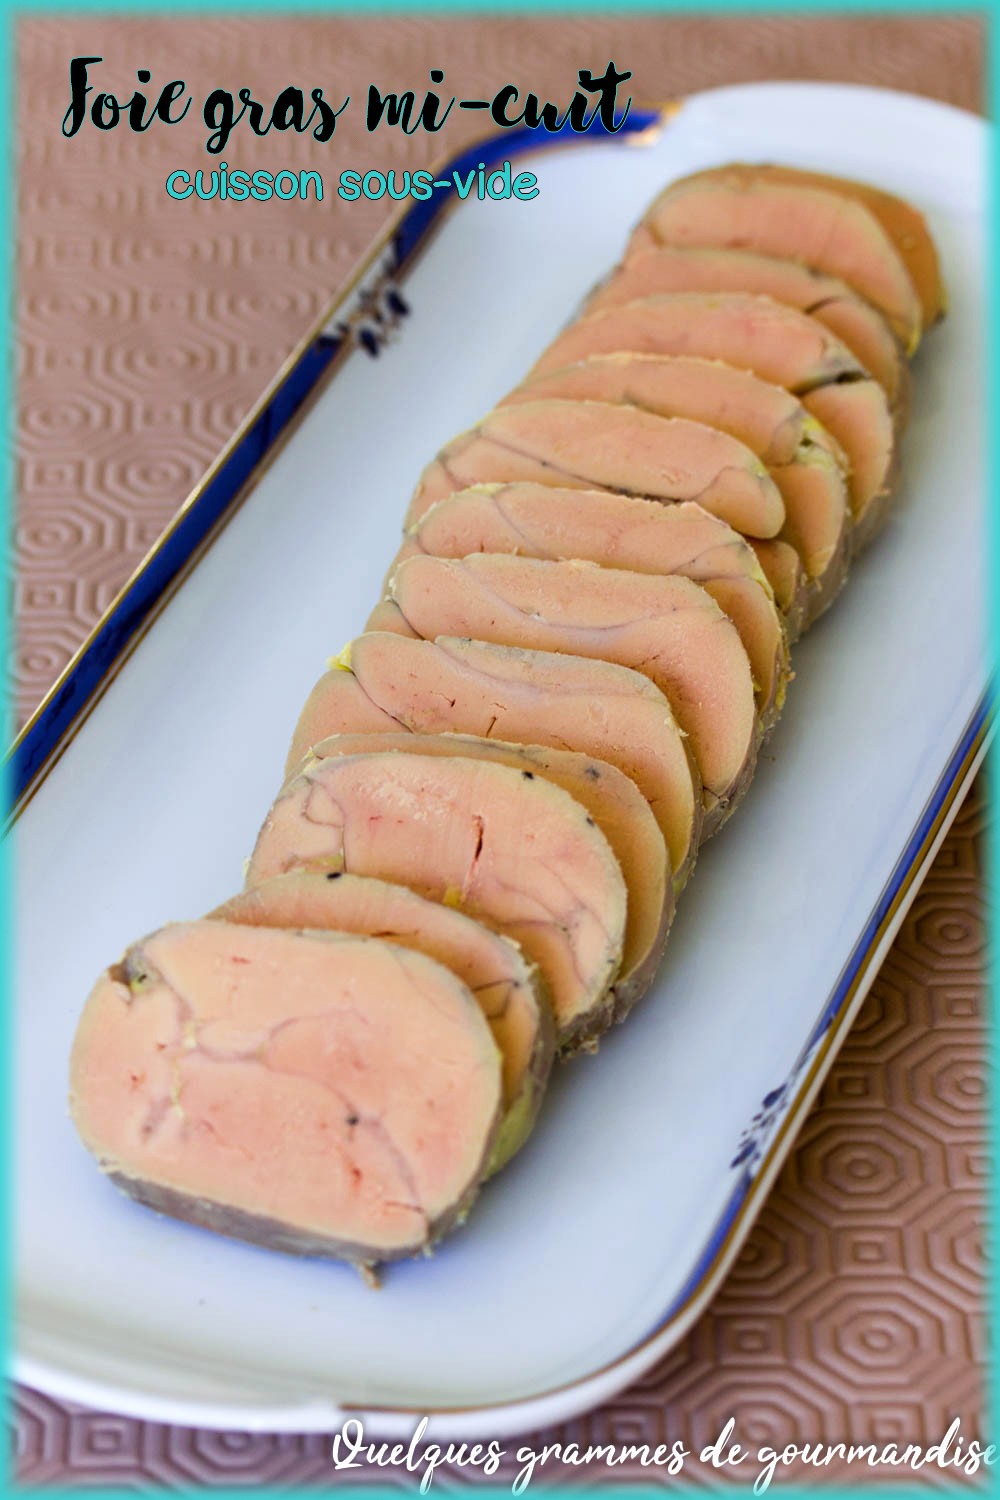 Foie gras cuisson sous-vide